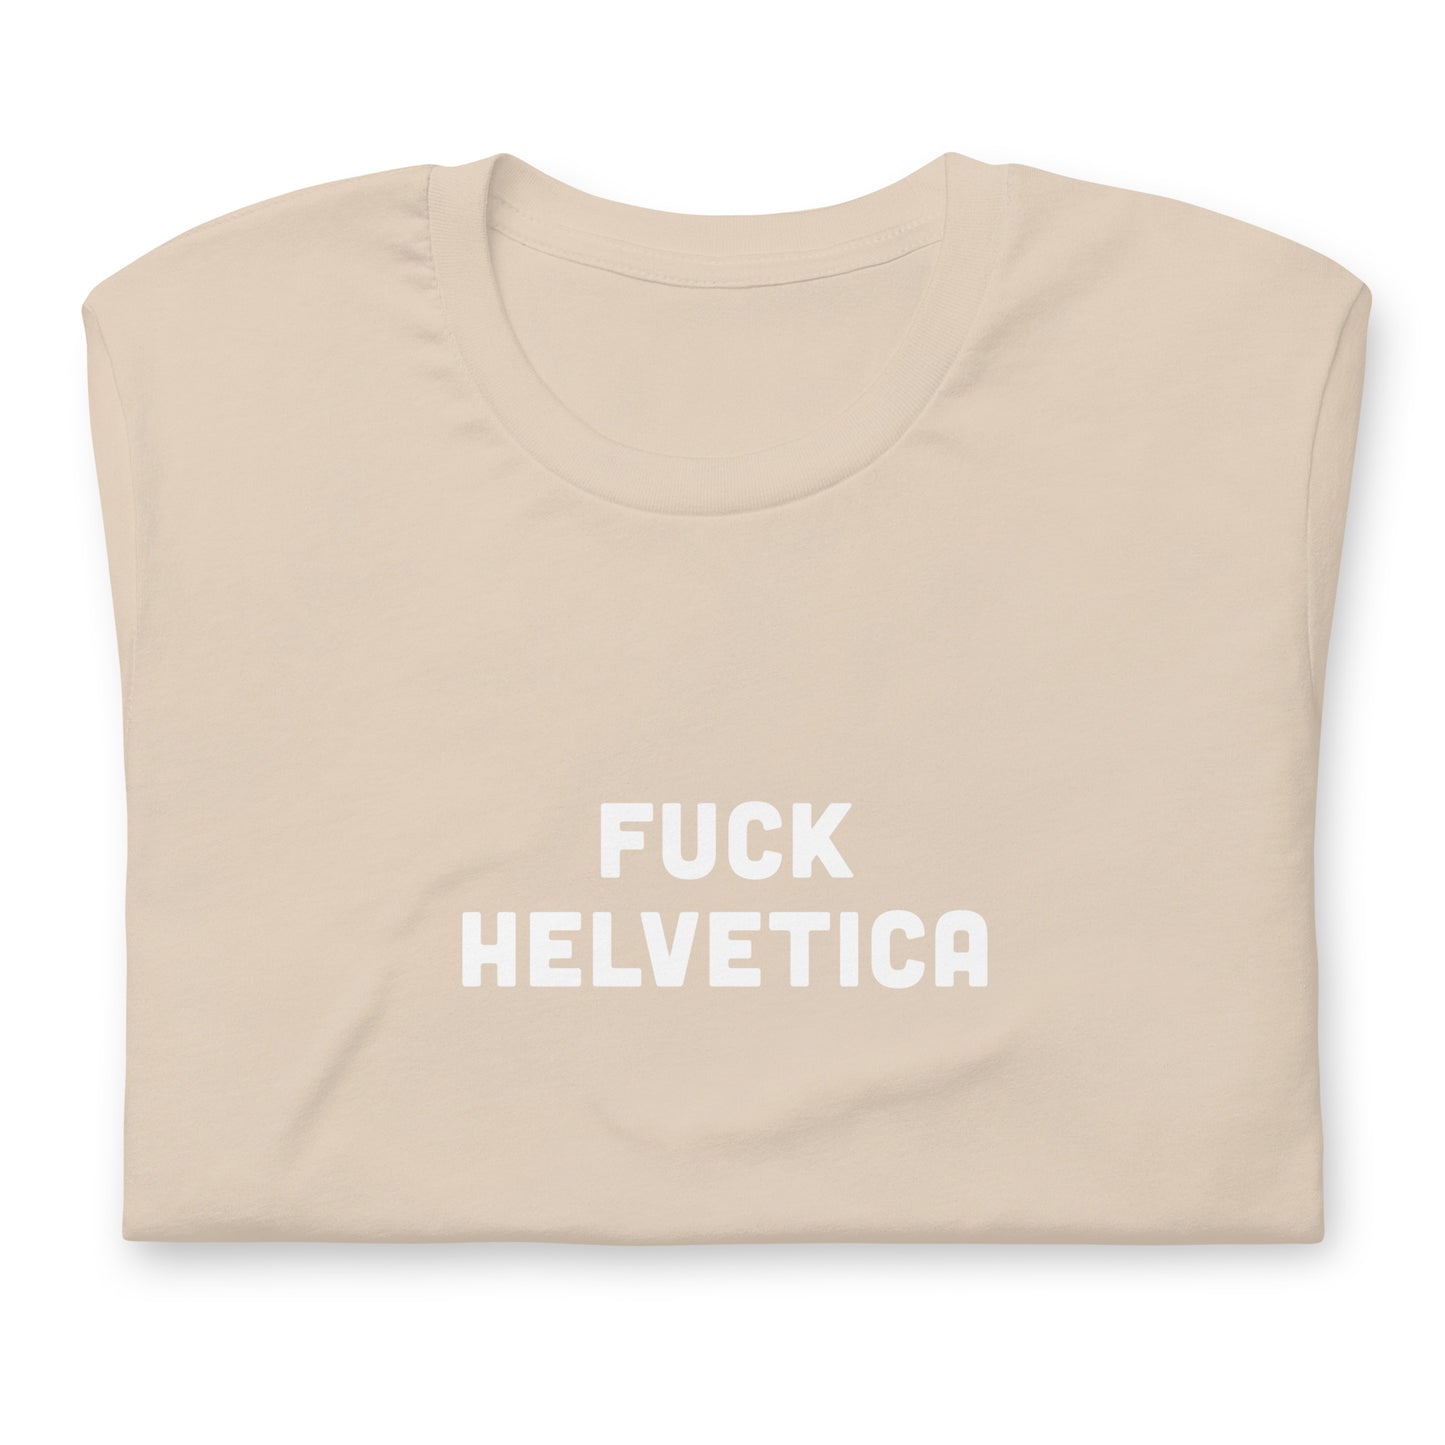 Fuck Helvetica T-Shirt Size L Color Asphalt